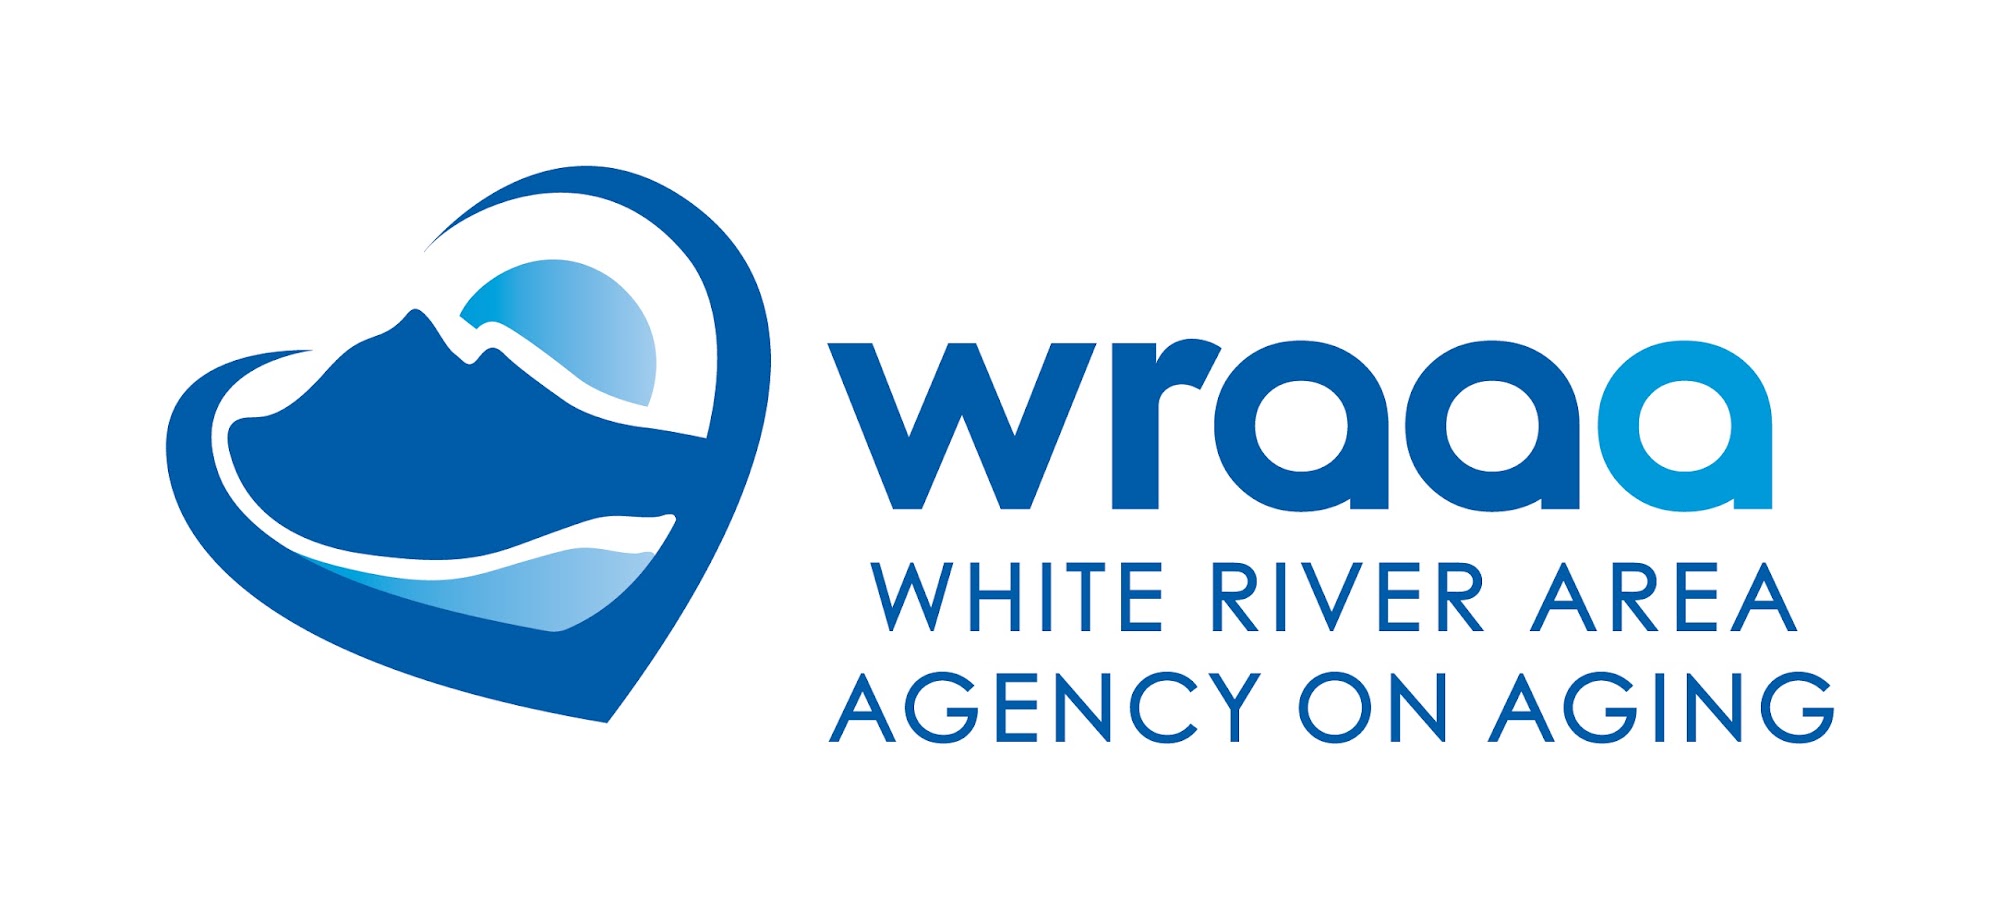 White River Area Agency On Aging 674 E Main St, Melbourne Arkansas 72556